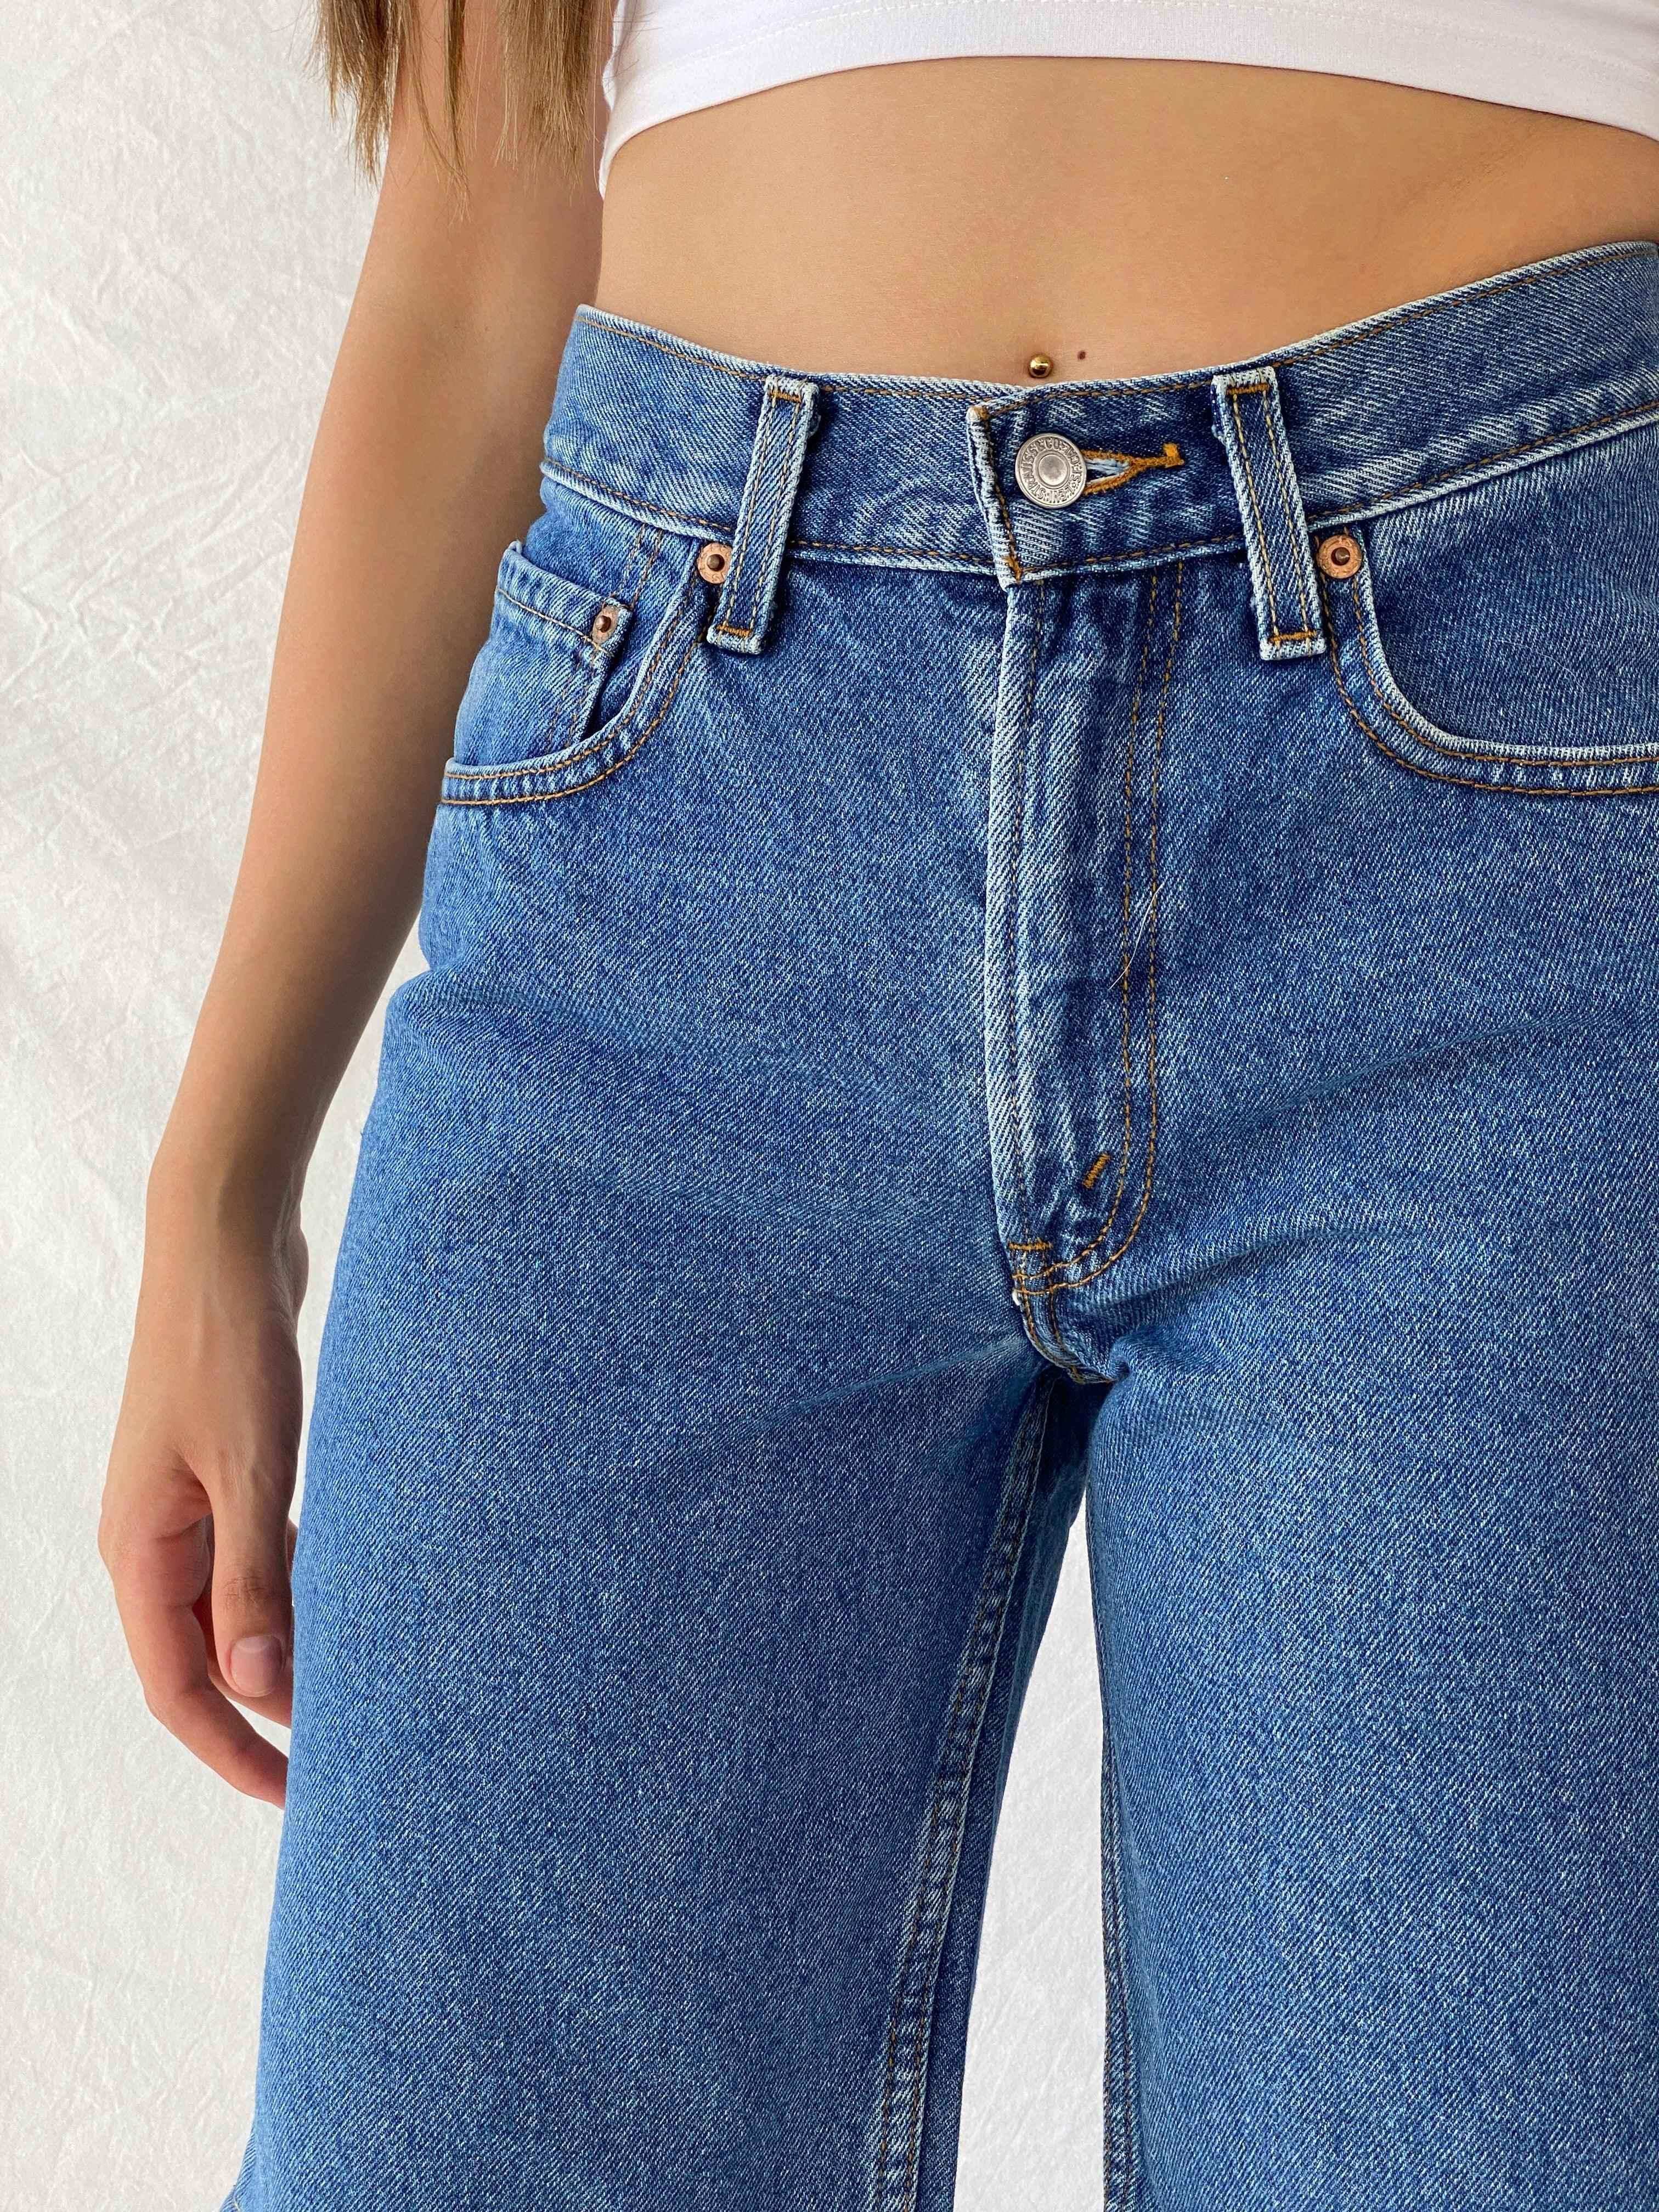 Reworked Levi’s Denim Shorts - Balagan Vintage Denim Short 00s, 90s, jeans, levis, levis jeans, Mira